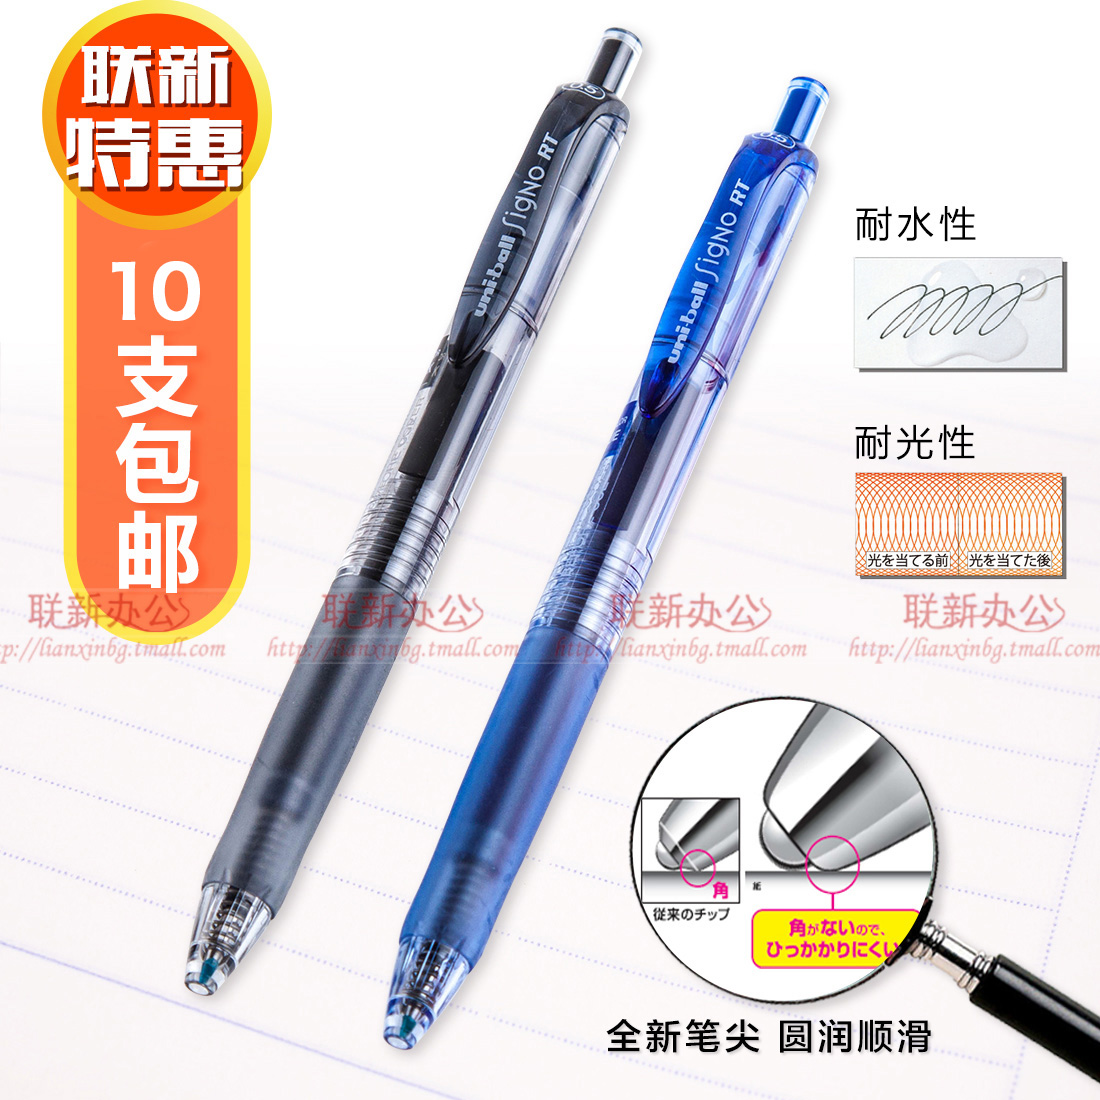 满10支包邮 日本三菱UMN-105水笔/三菱签字笔中性笔UMN-105/0.5mm